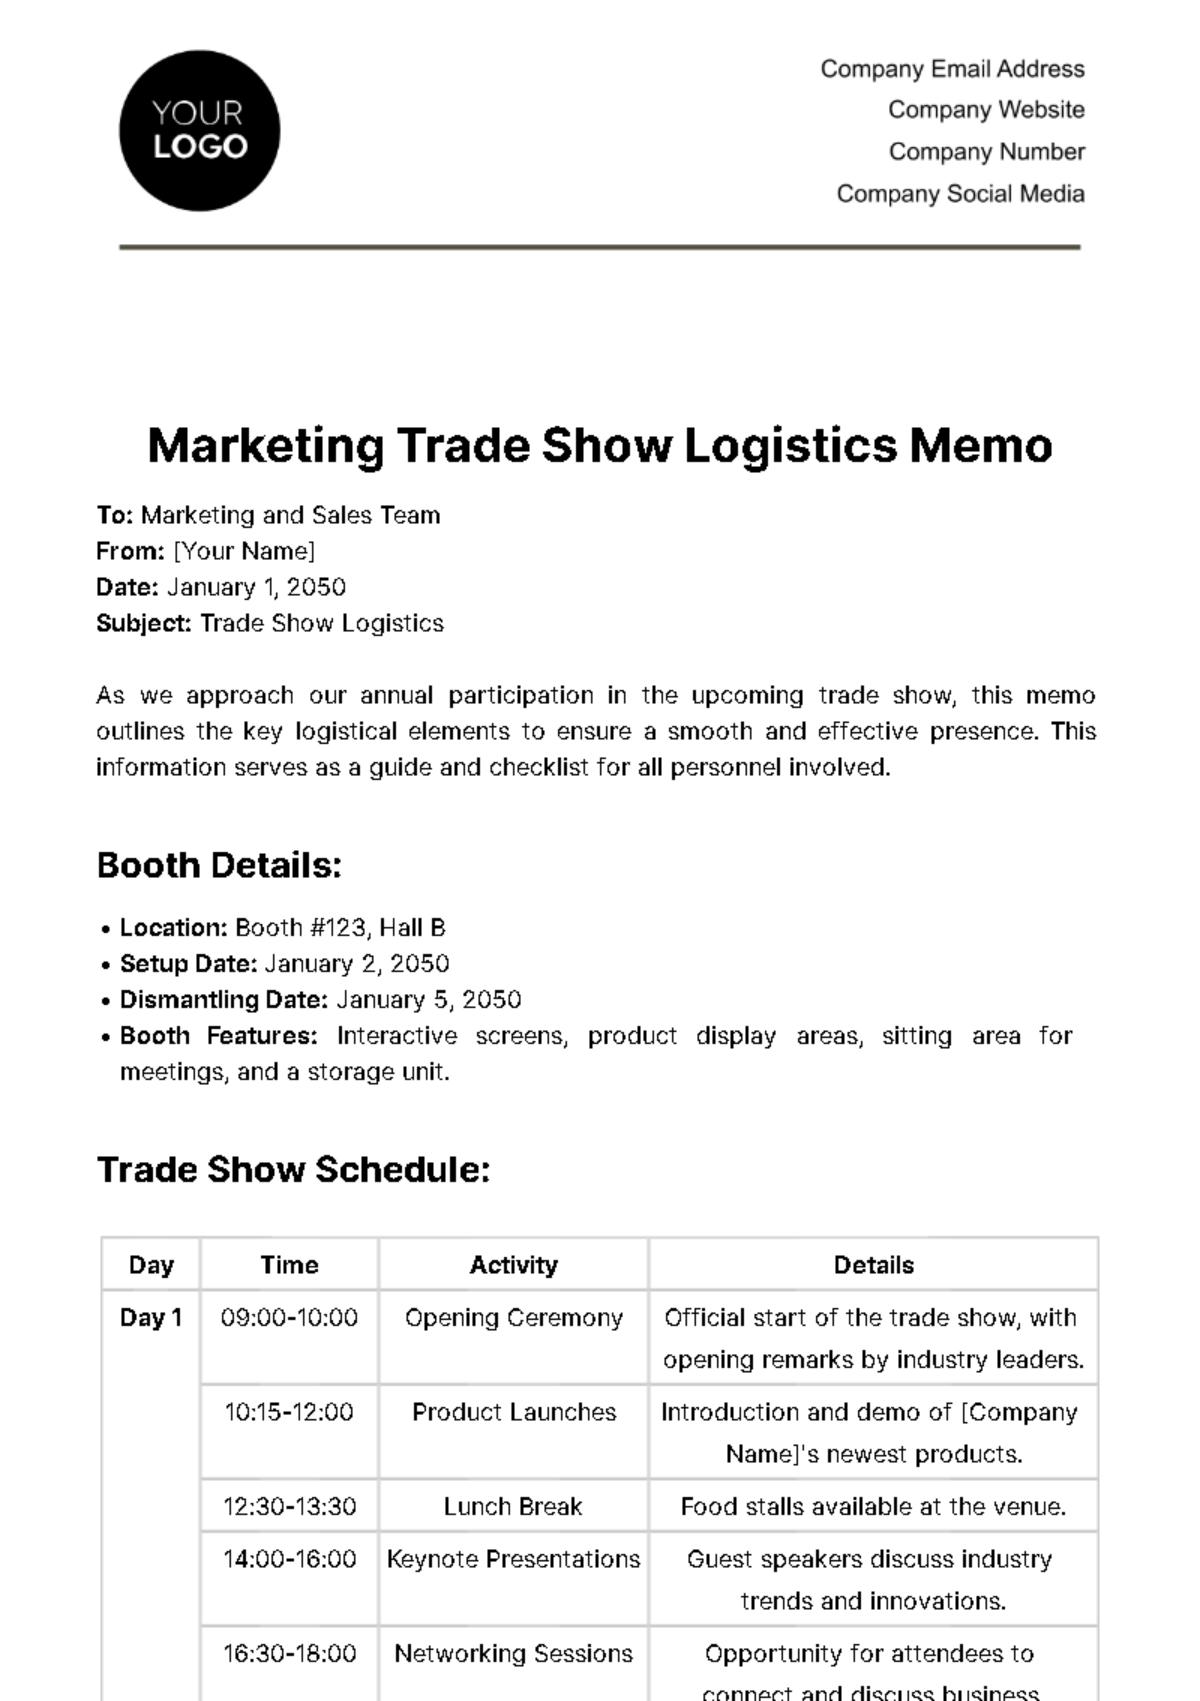 Marketing Trade Show Logistics Memo Template